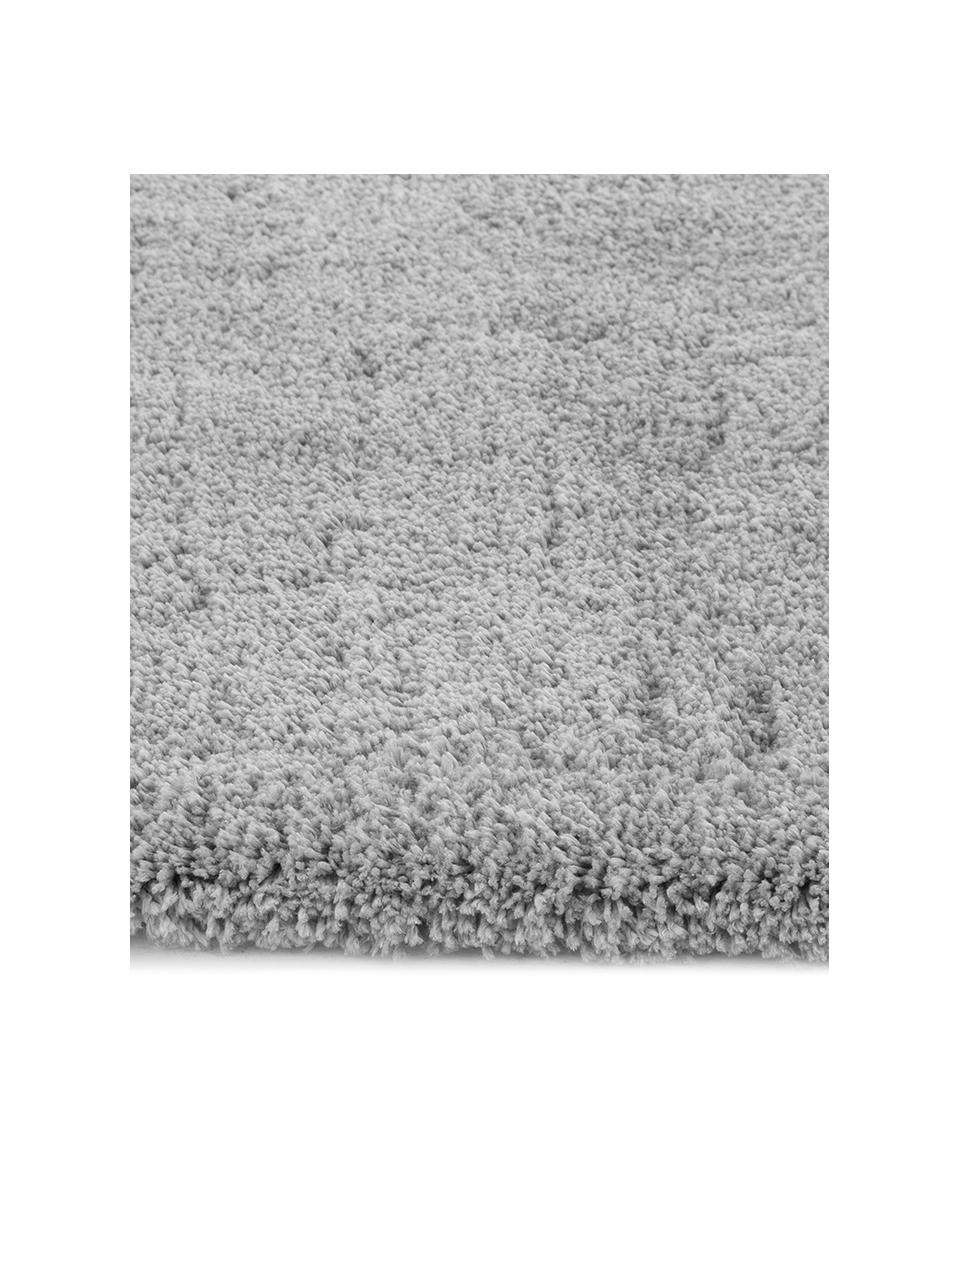 Pluizig hoogpolig vloerkleed Leighton in grijs, Microvezel, Grijs, 300 x 400 cm